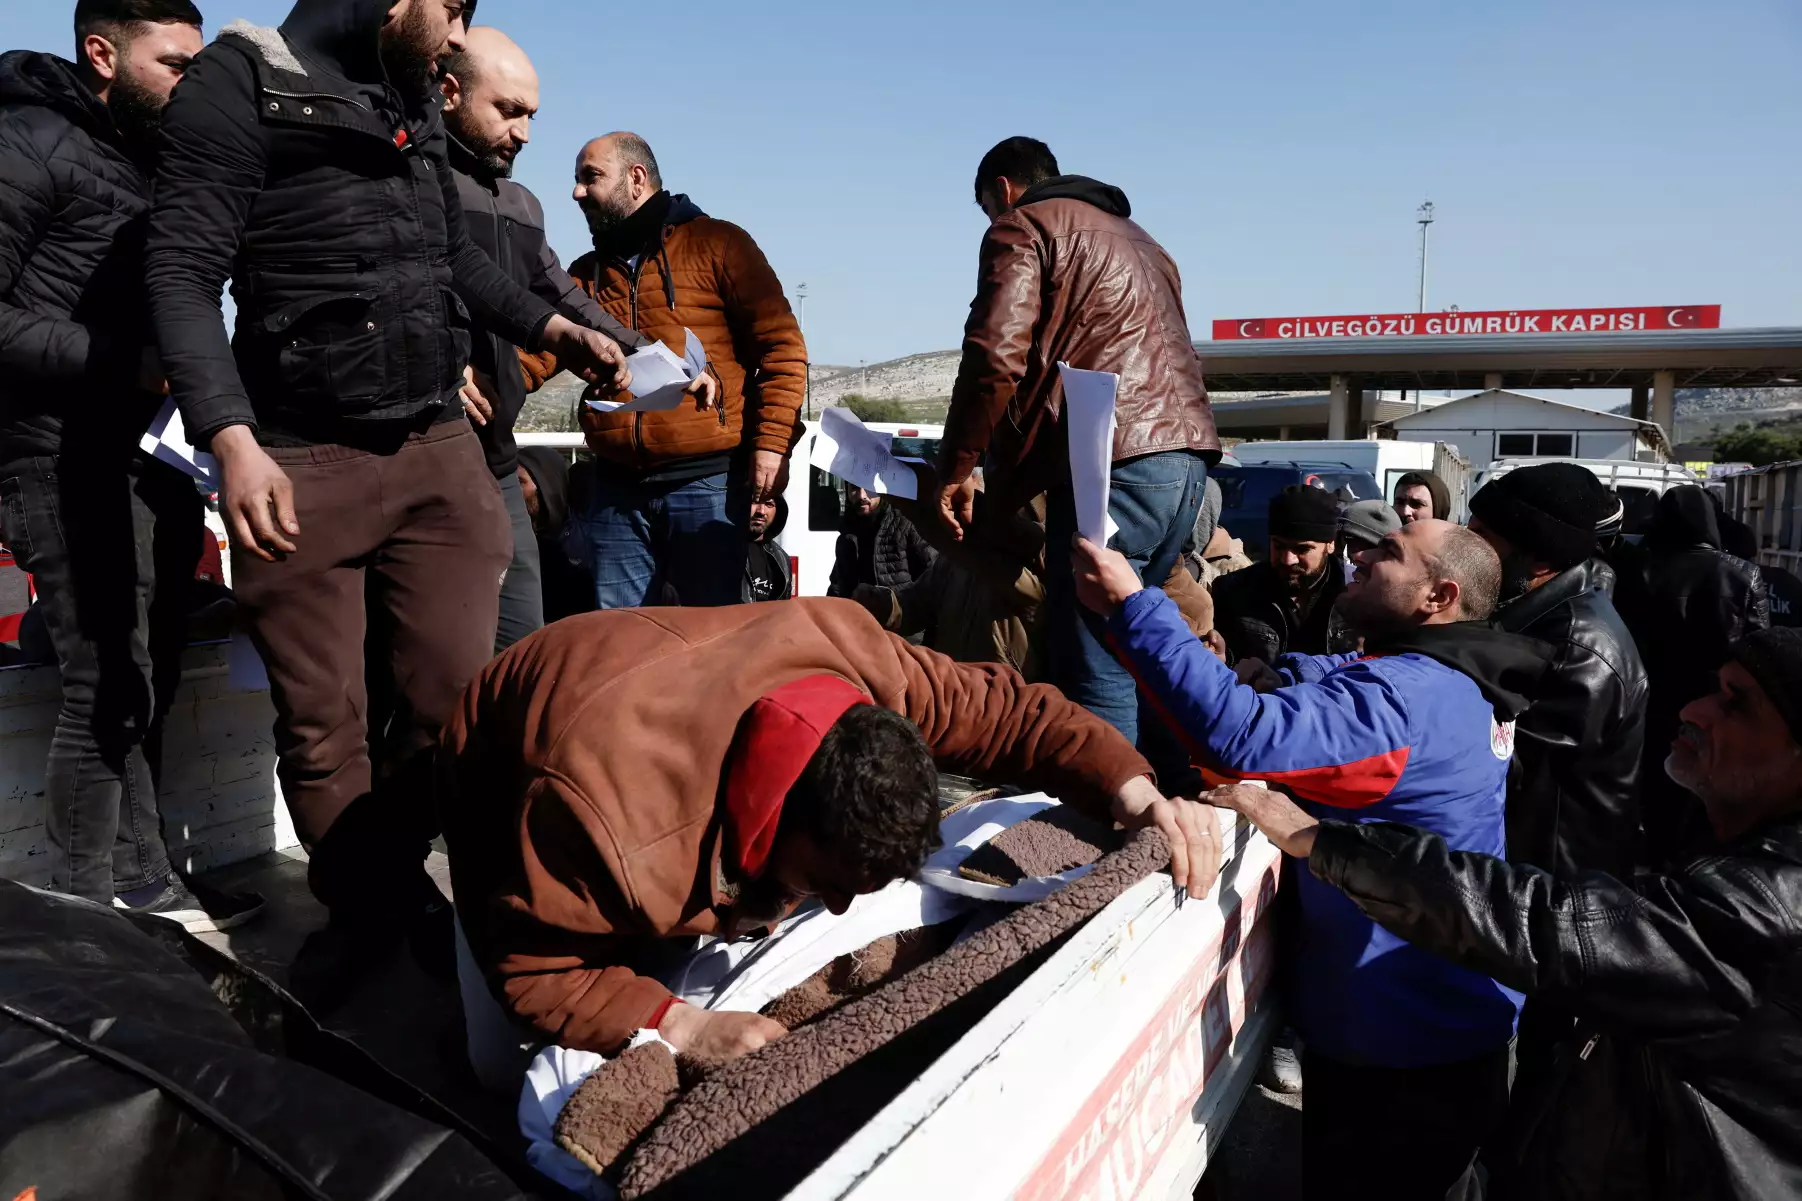 Σεισμός στην Τουρκία: Η Ευρωπαϊκή Ένωση στέλνει πάνω από 1.500 διασώστες και γιατρούς